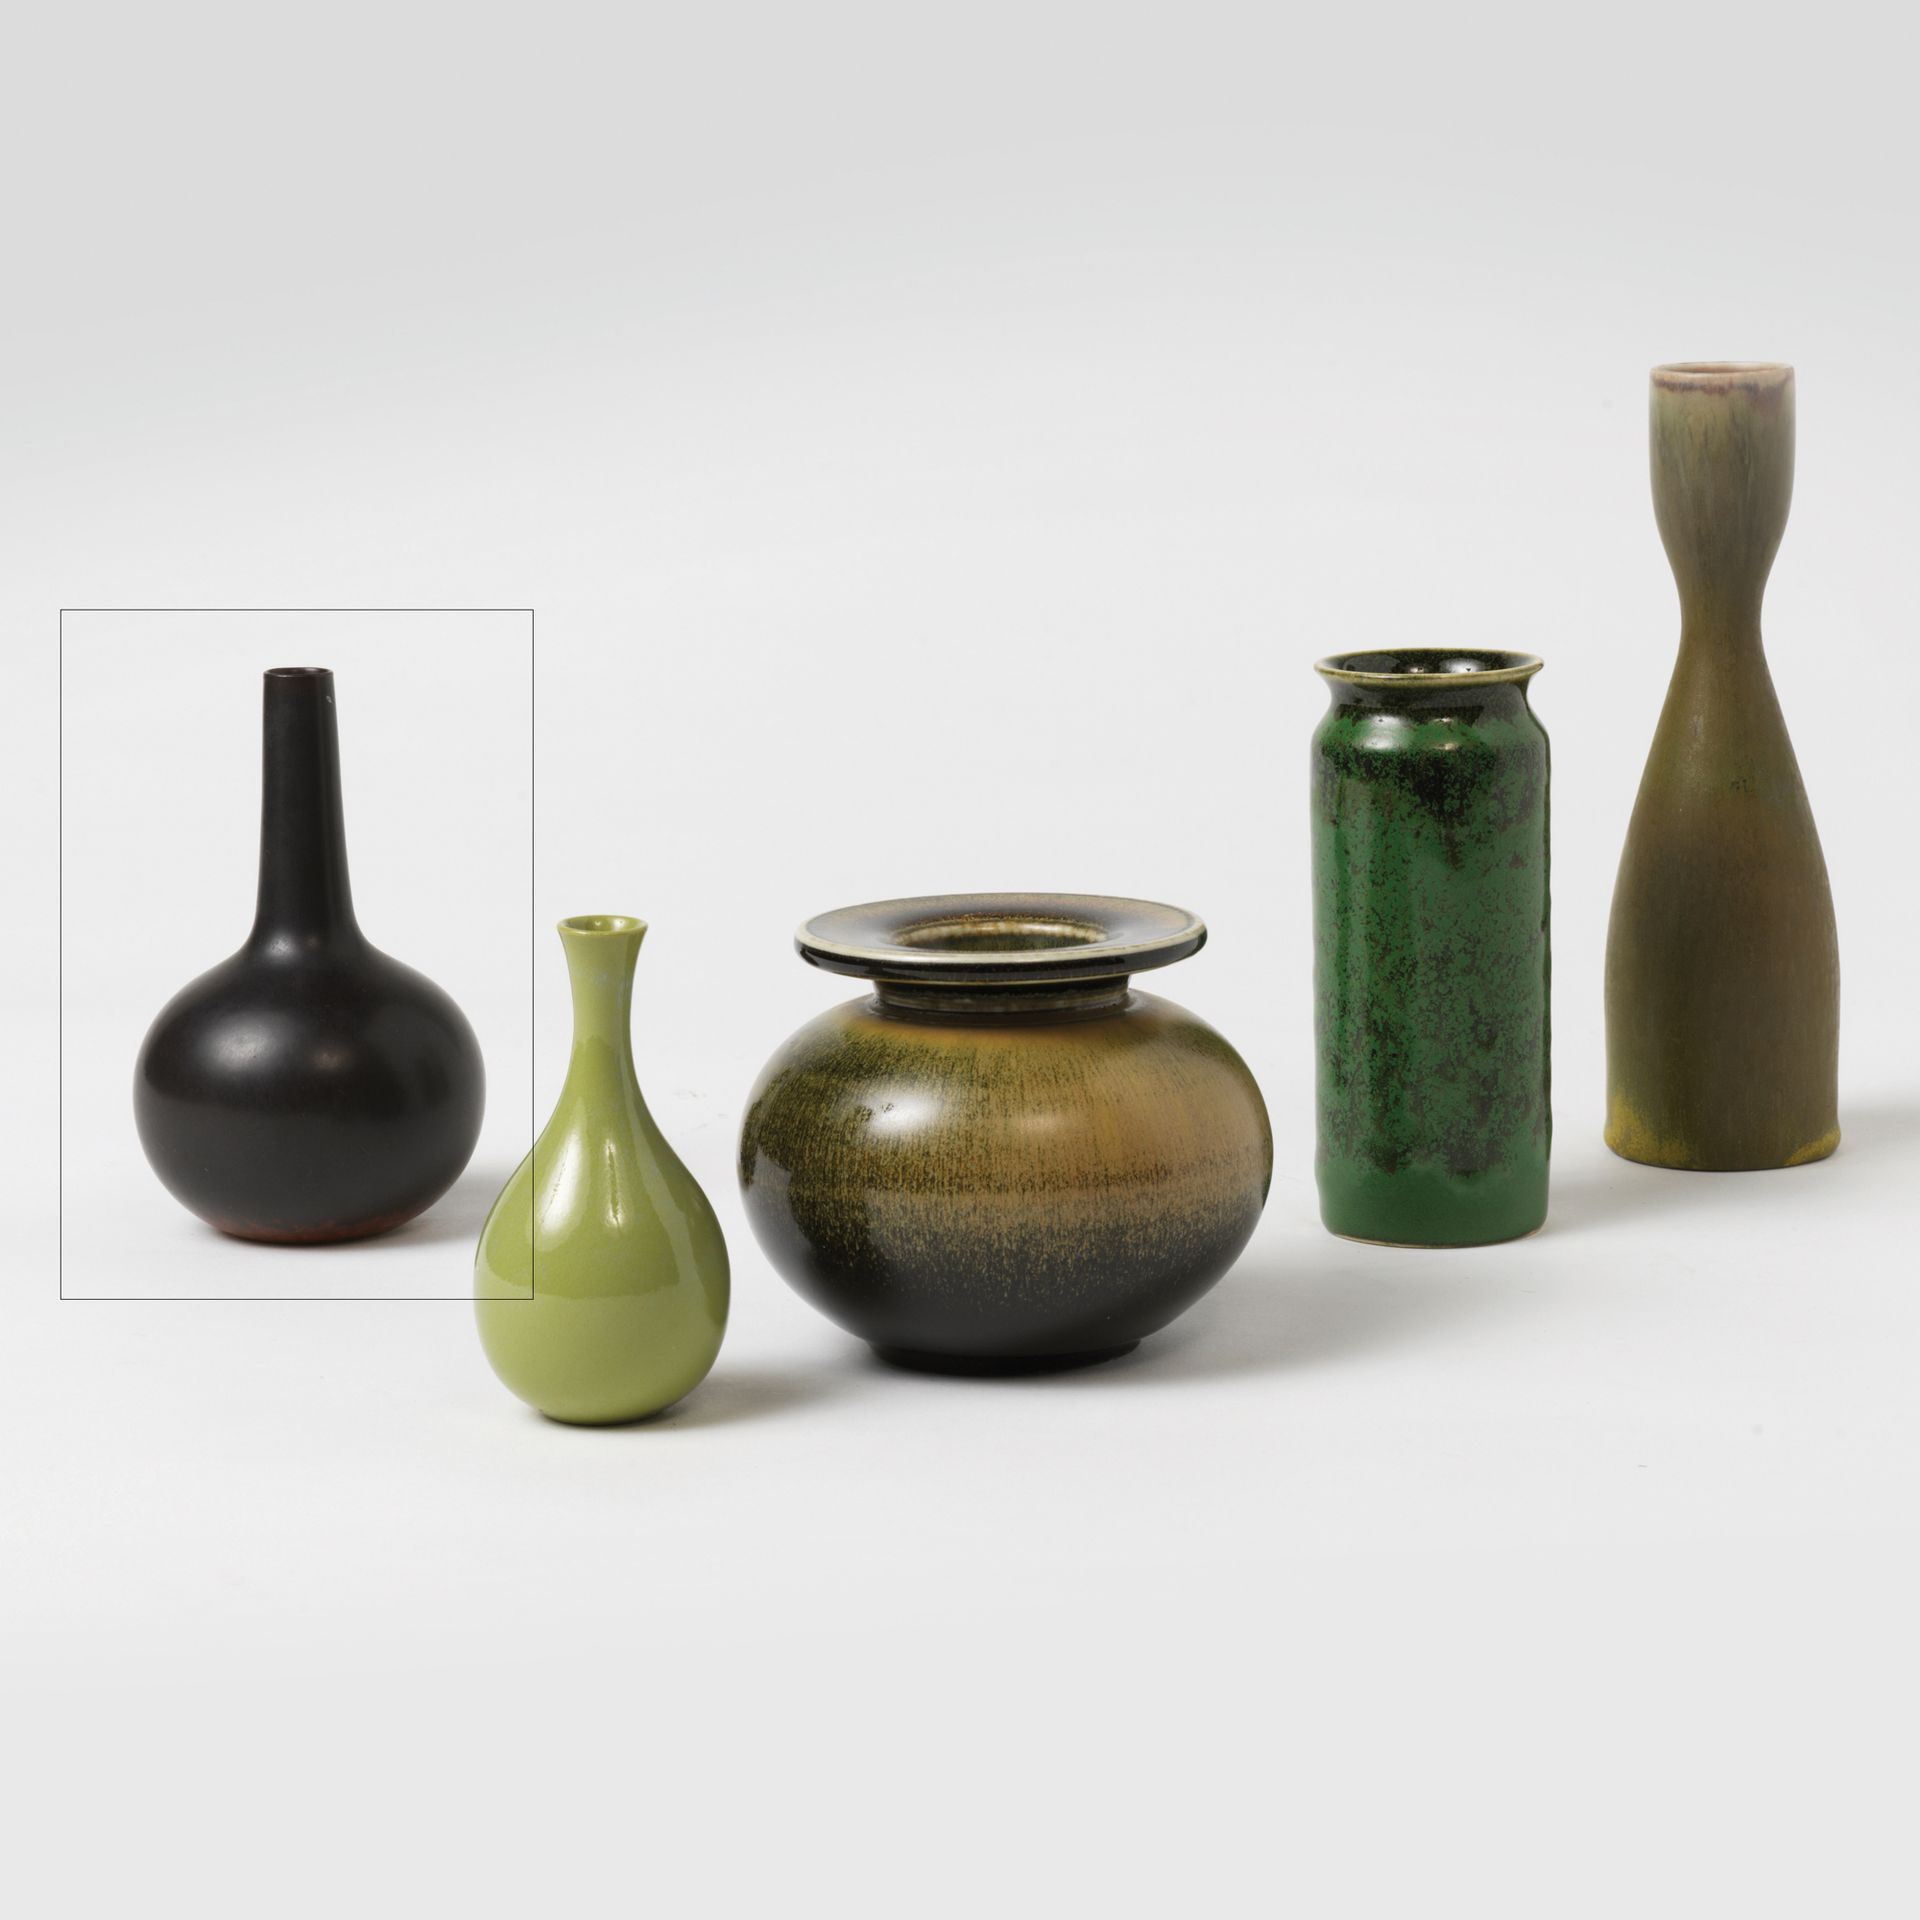 Carl Harry STALHANE (1920-1990) Vase, vers 1950
Émail noir
Manufacture de Rörstr&hellip;